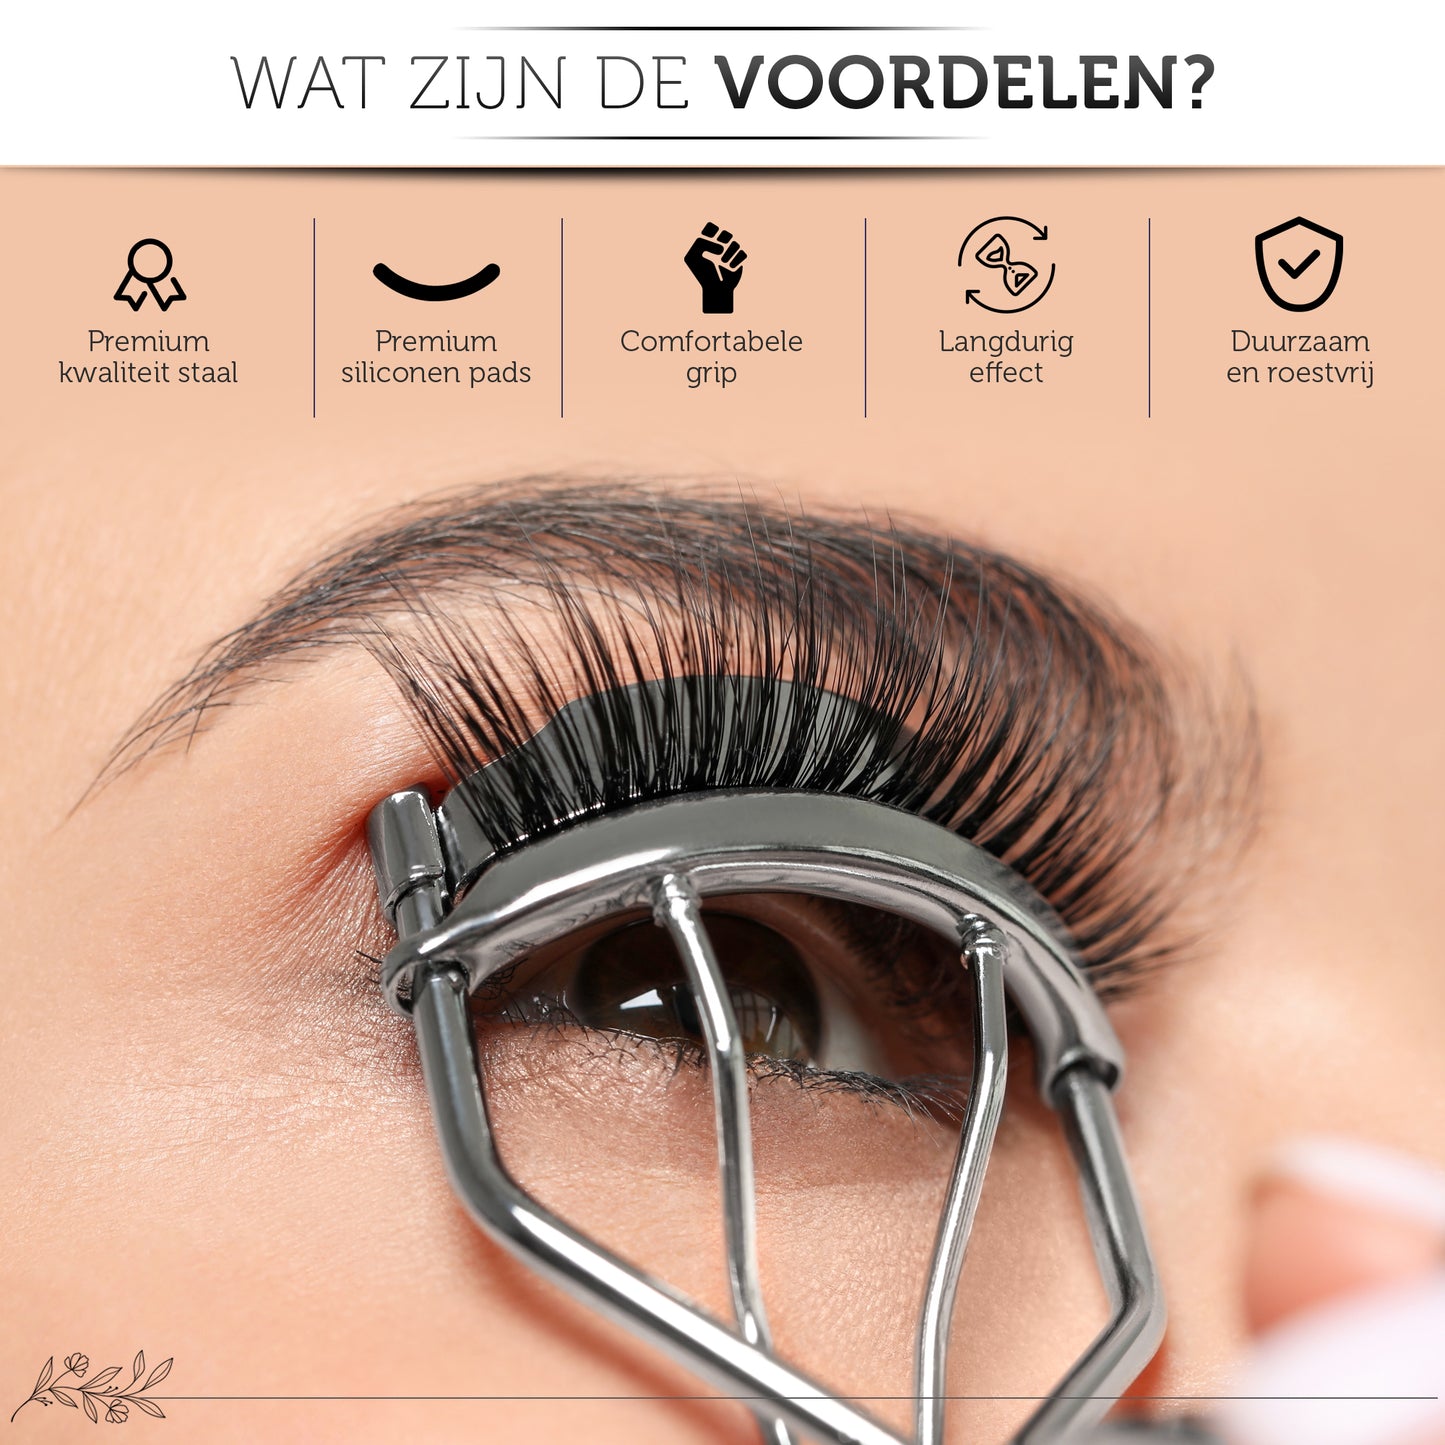 INTER-ESQUE® Wimperkruller - Eyelash Curler + 5x Gratis Extra Siliconen Pad - Zilver